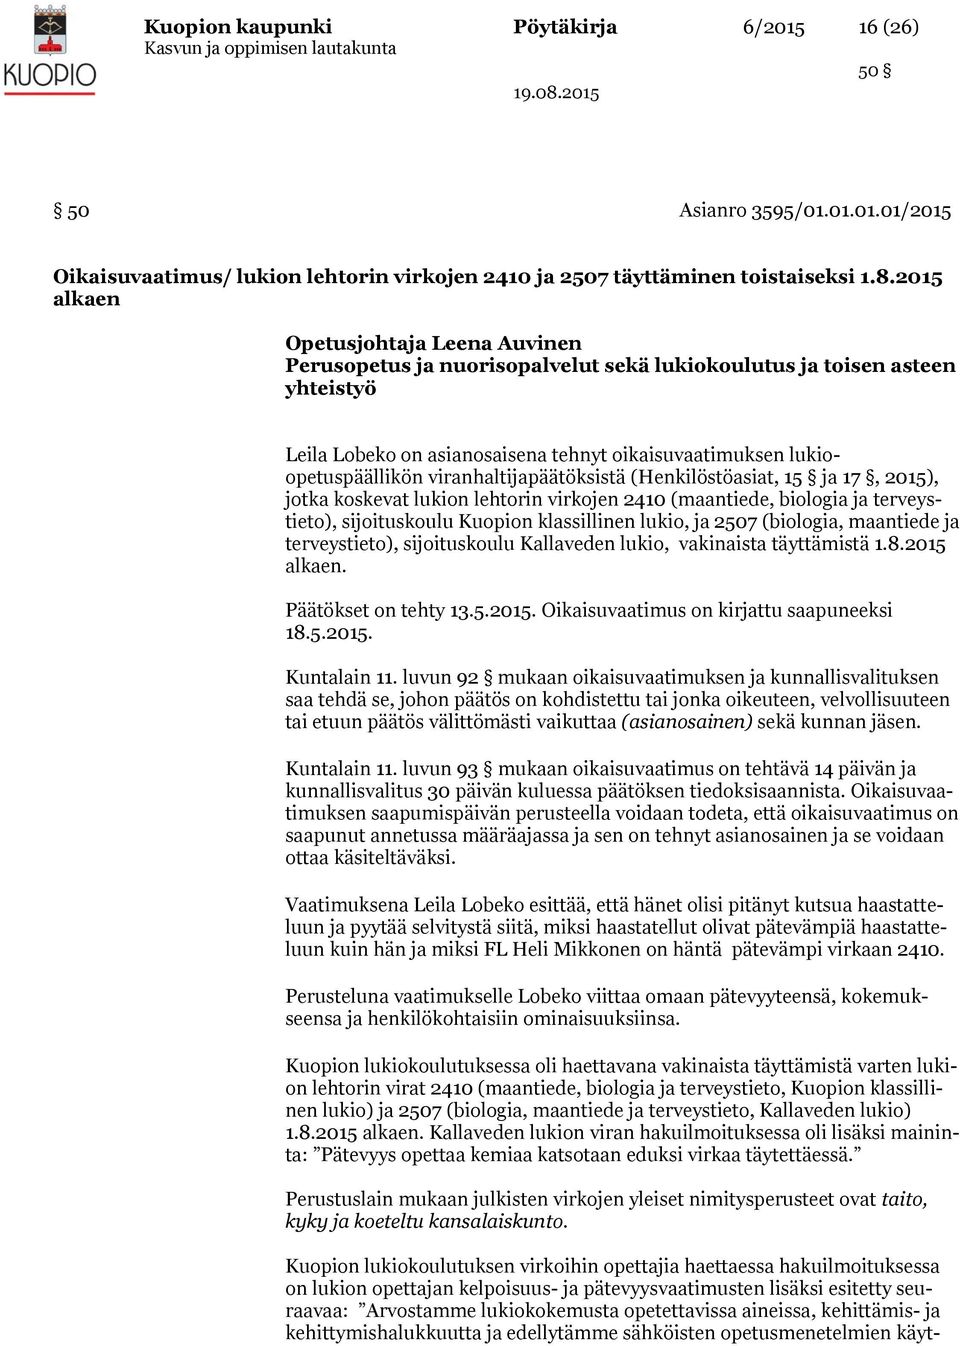 viranhaltijapäätöksistä (Henkilöstöasiat, 15 ja 17, 2015), jotka koskevat lukion lehtorin virkojen 2410 (maantiede, biologia ja terveystieto), sijoituskoulu Kuopion klassillinen lukio, ja 2507